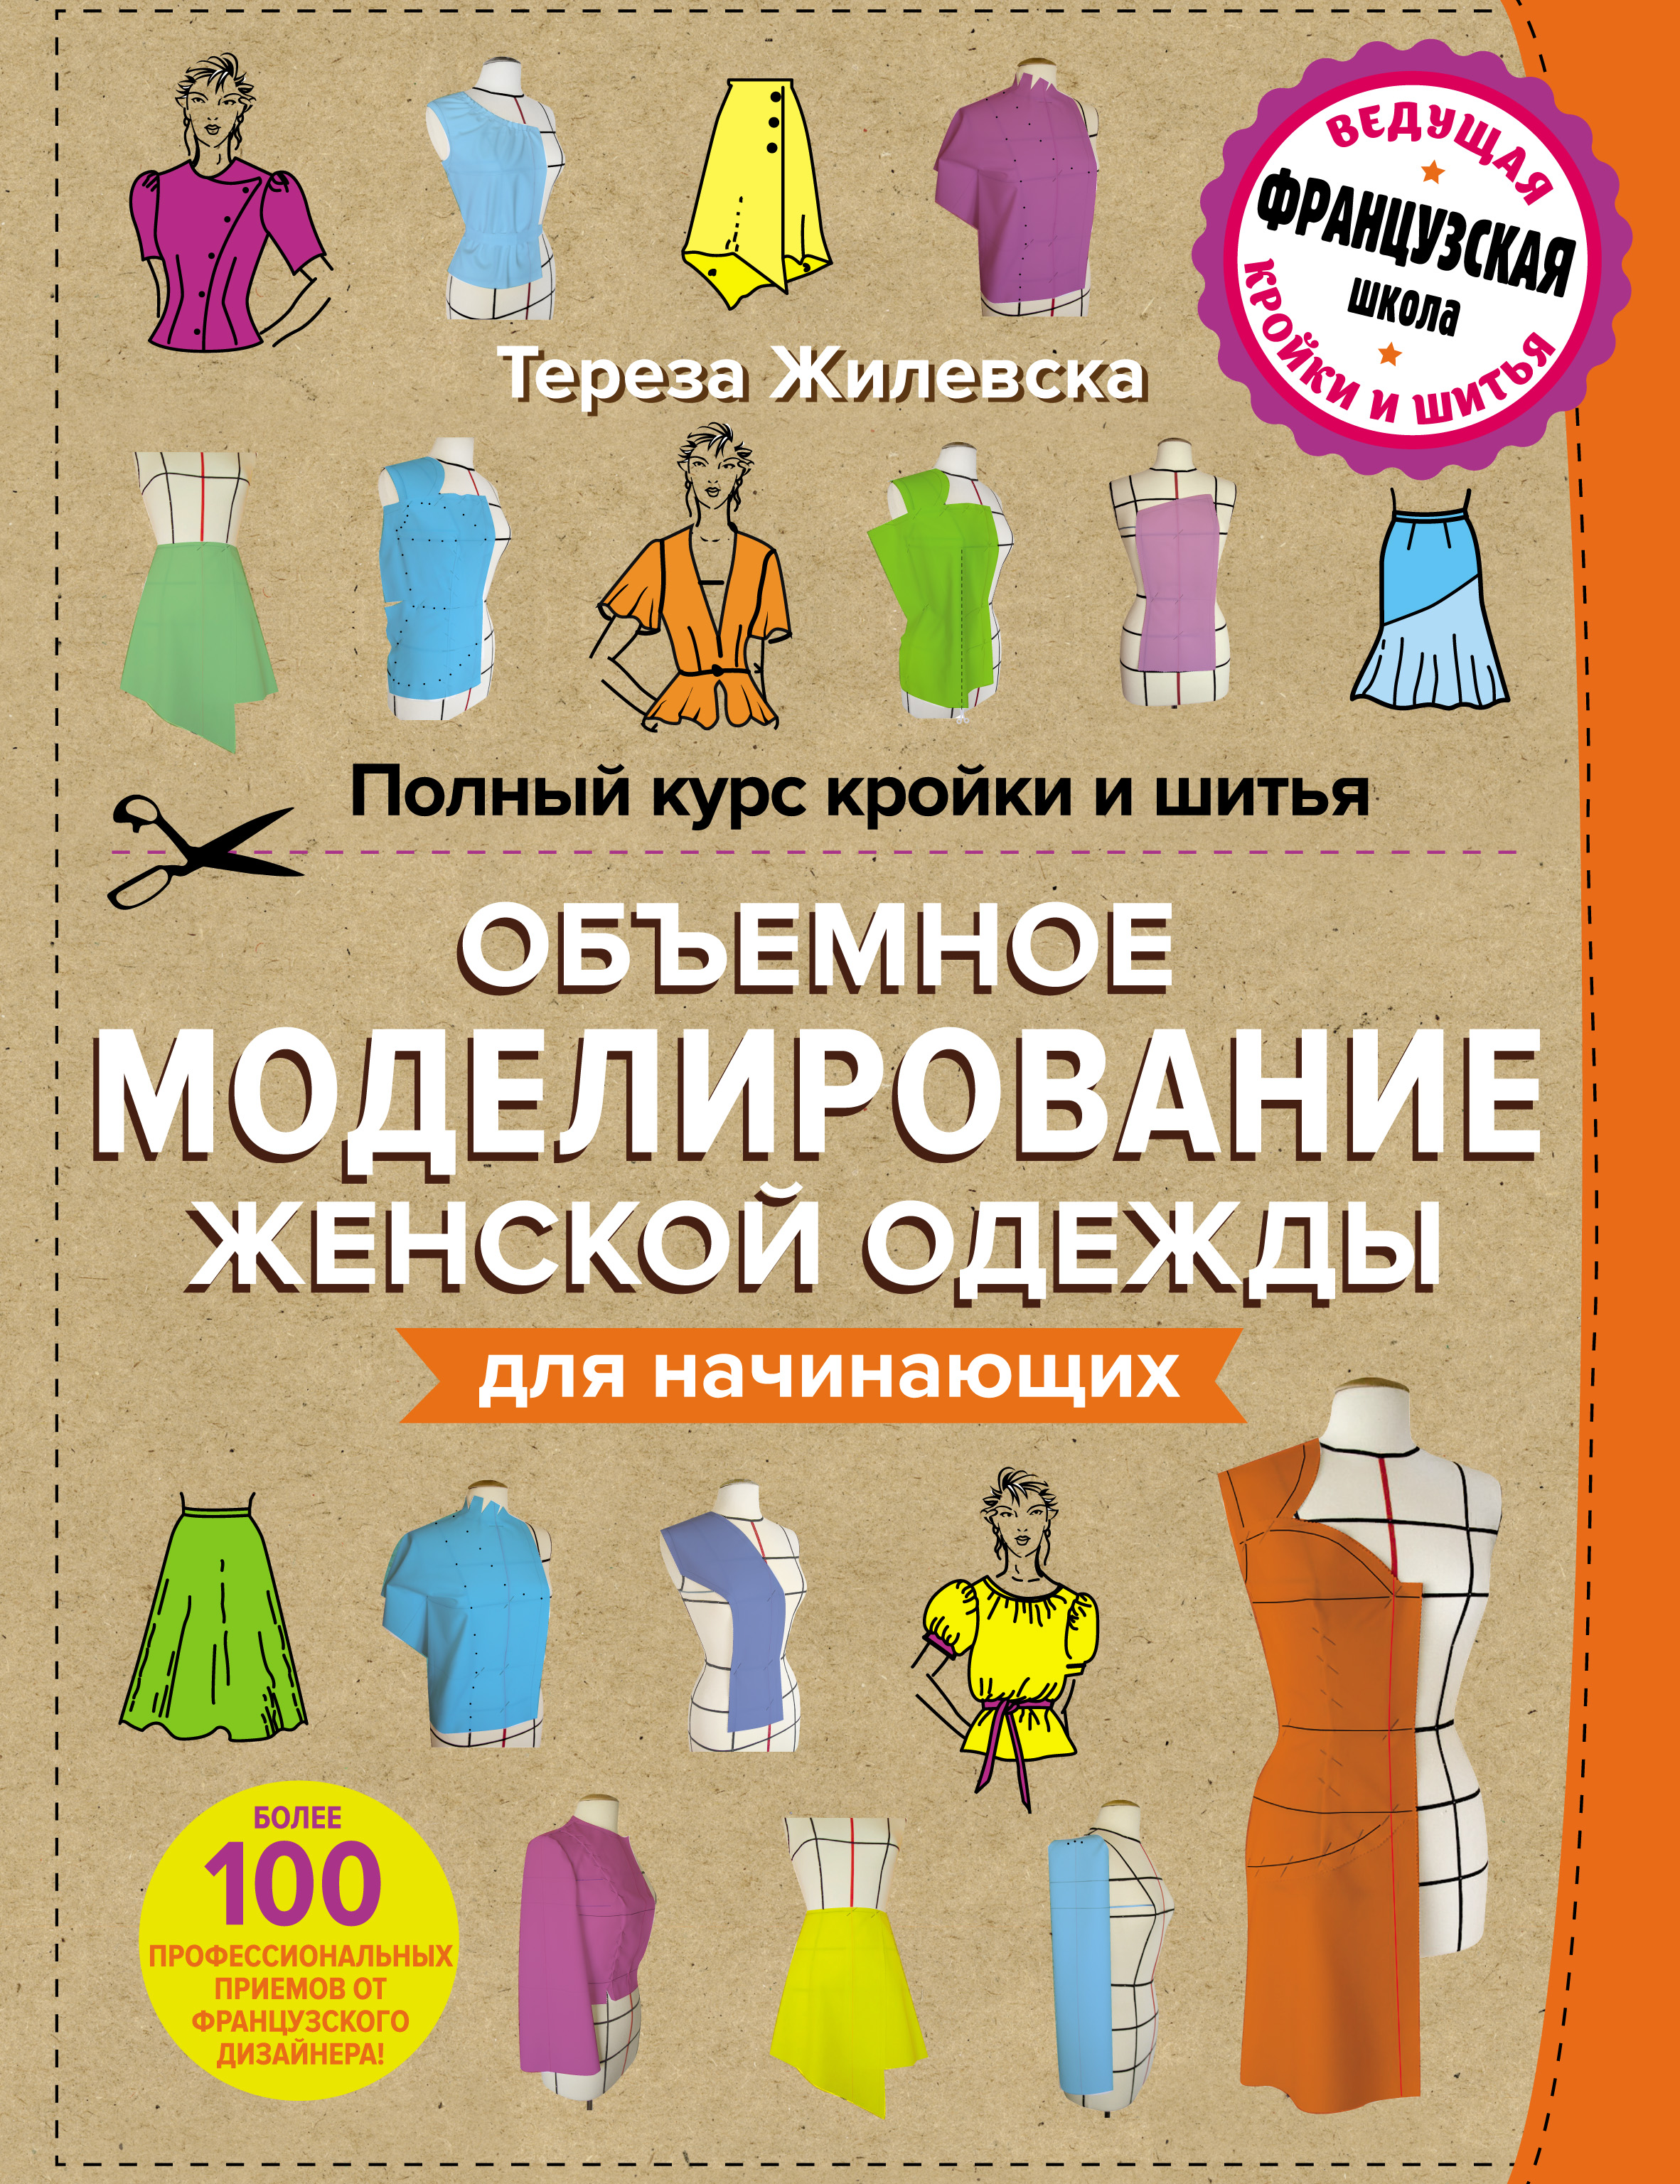 Курсы шитья и кройки в Москве: обучение в школе шитья для начинающих